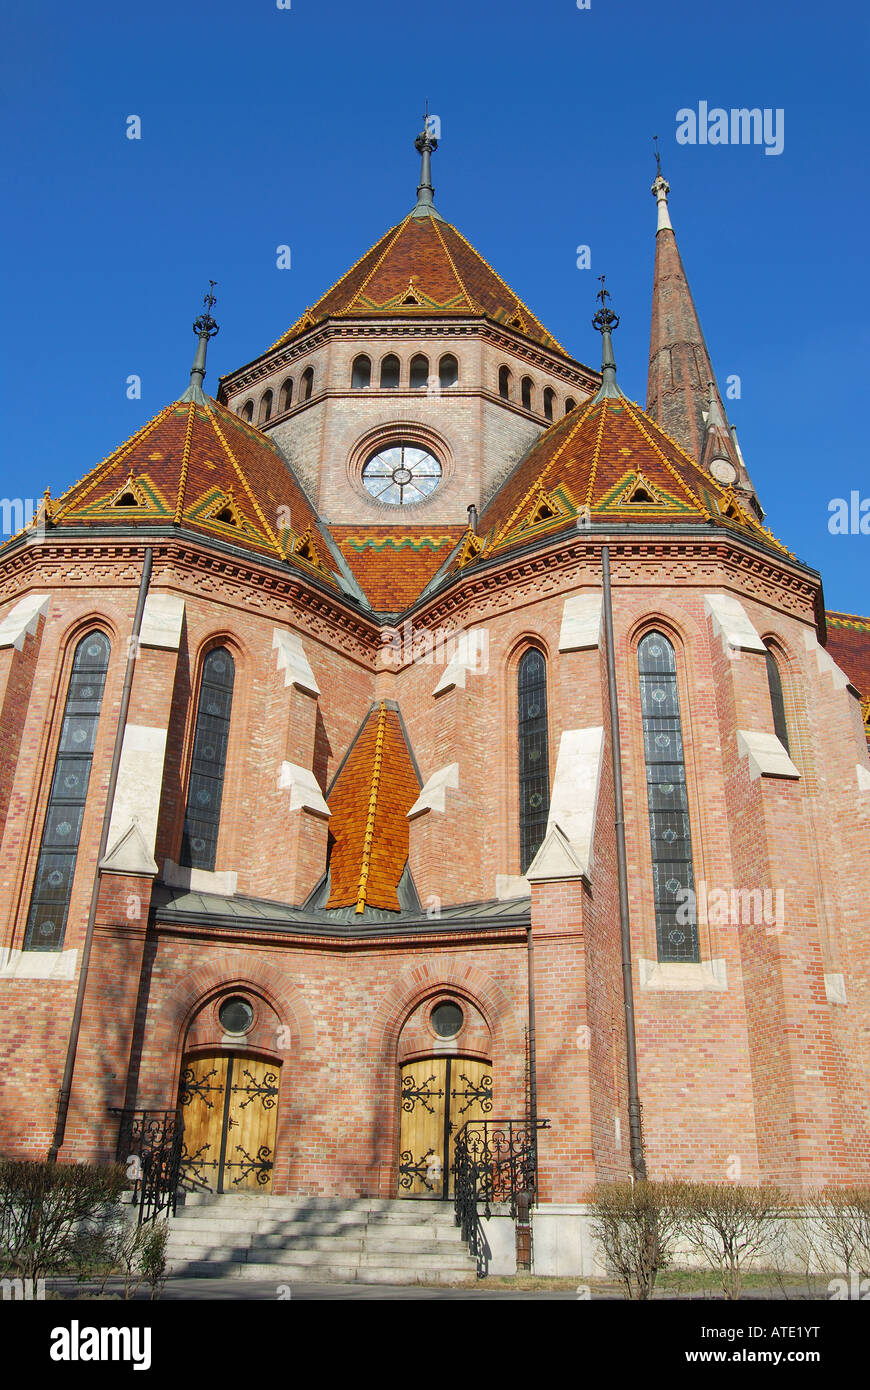 Iglesia calvinista, Buda, la Colina del Castillo, Budapest, República de Hungría Foto de stock